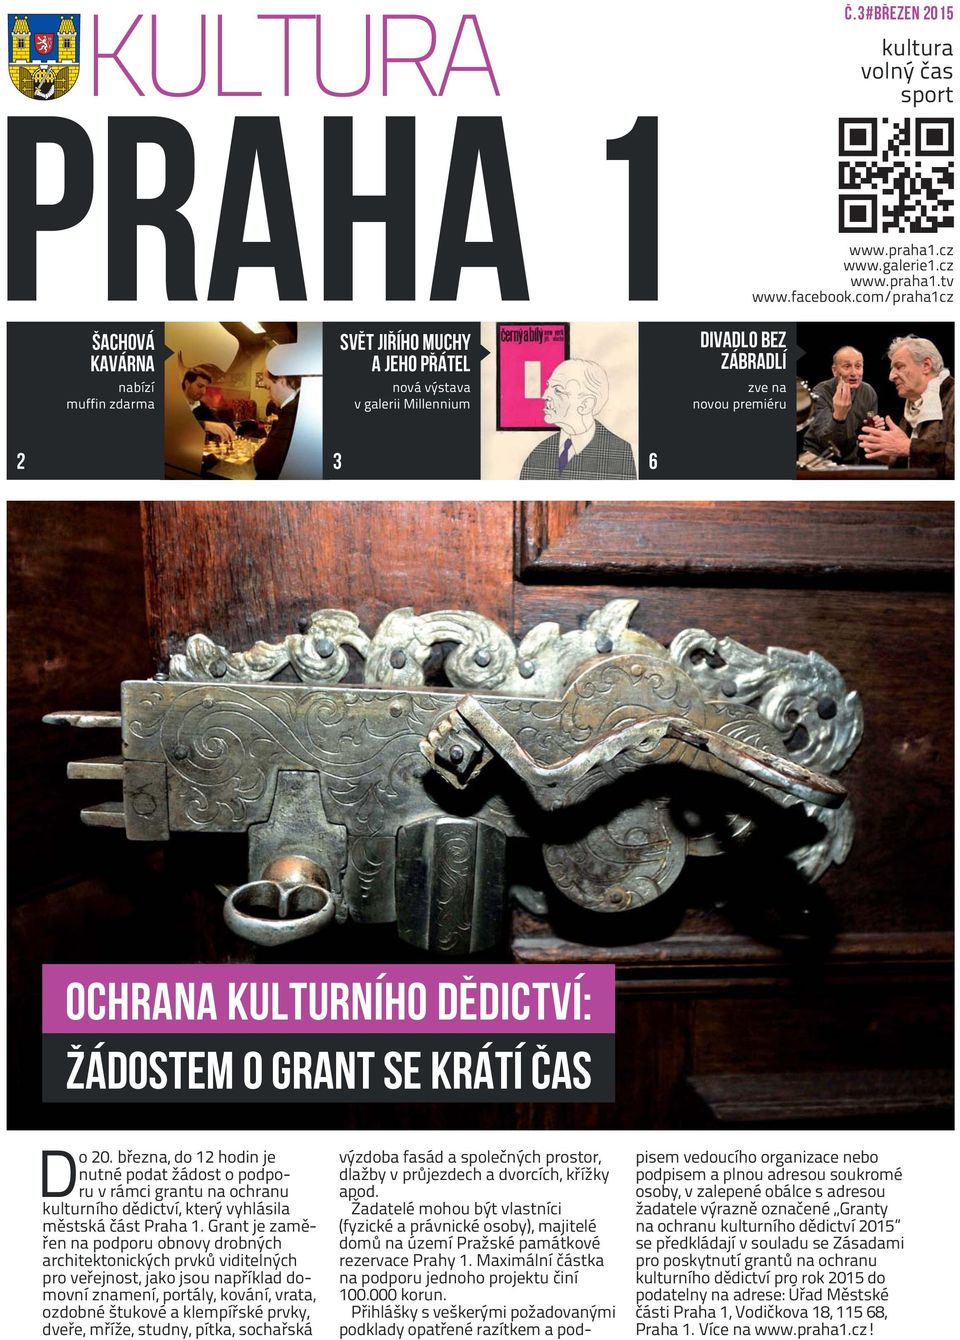 žádostem o grant se krátí čas Do 20. března, do 12 hodin je nutné podat žádost o podporu v rámci grantu na ochranu kulturního dědictví, který vyhlásila městská část Praha 1.